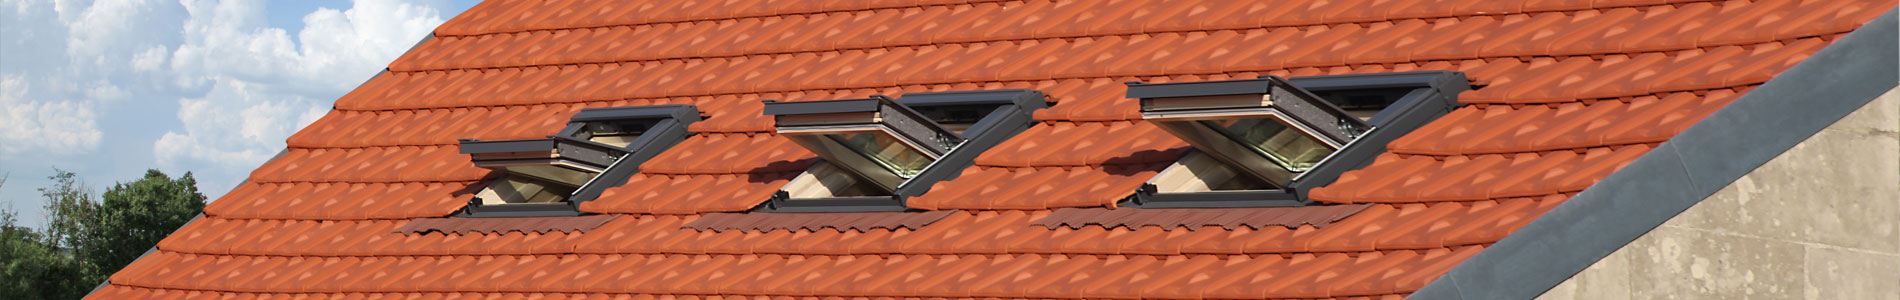 Einbau von Dachfenstern vom VELUX Experten Zimmerei und Dachdeckerei Höke aus Bielefeld